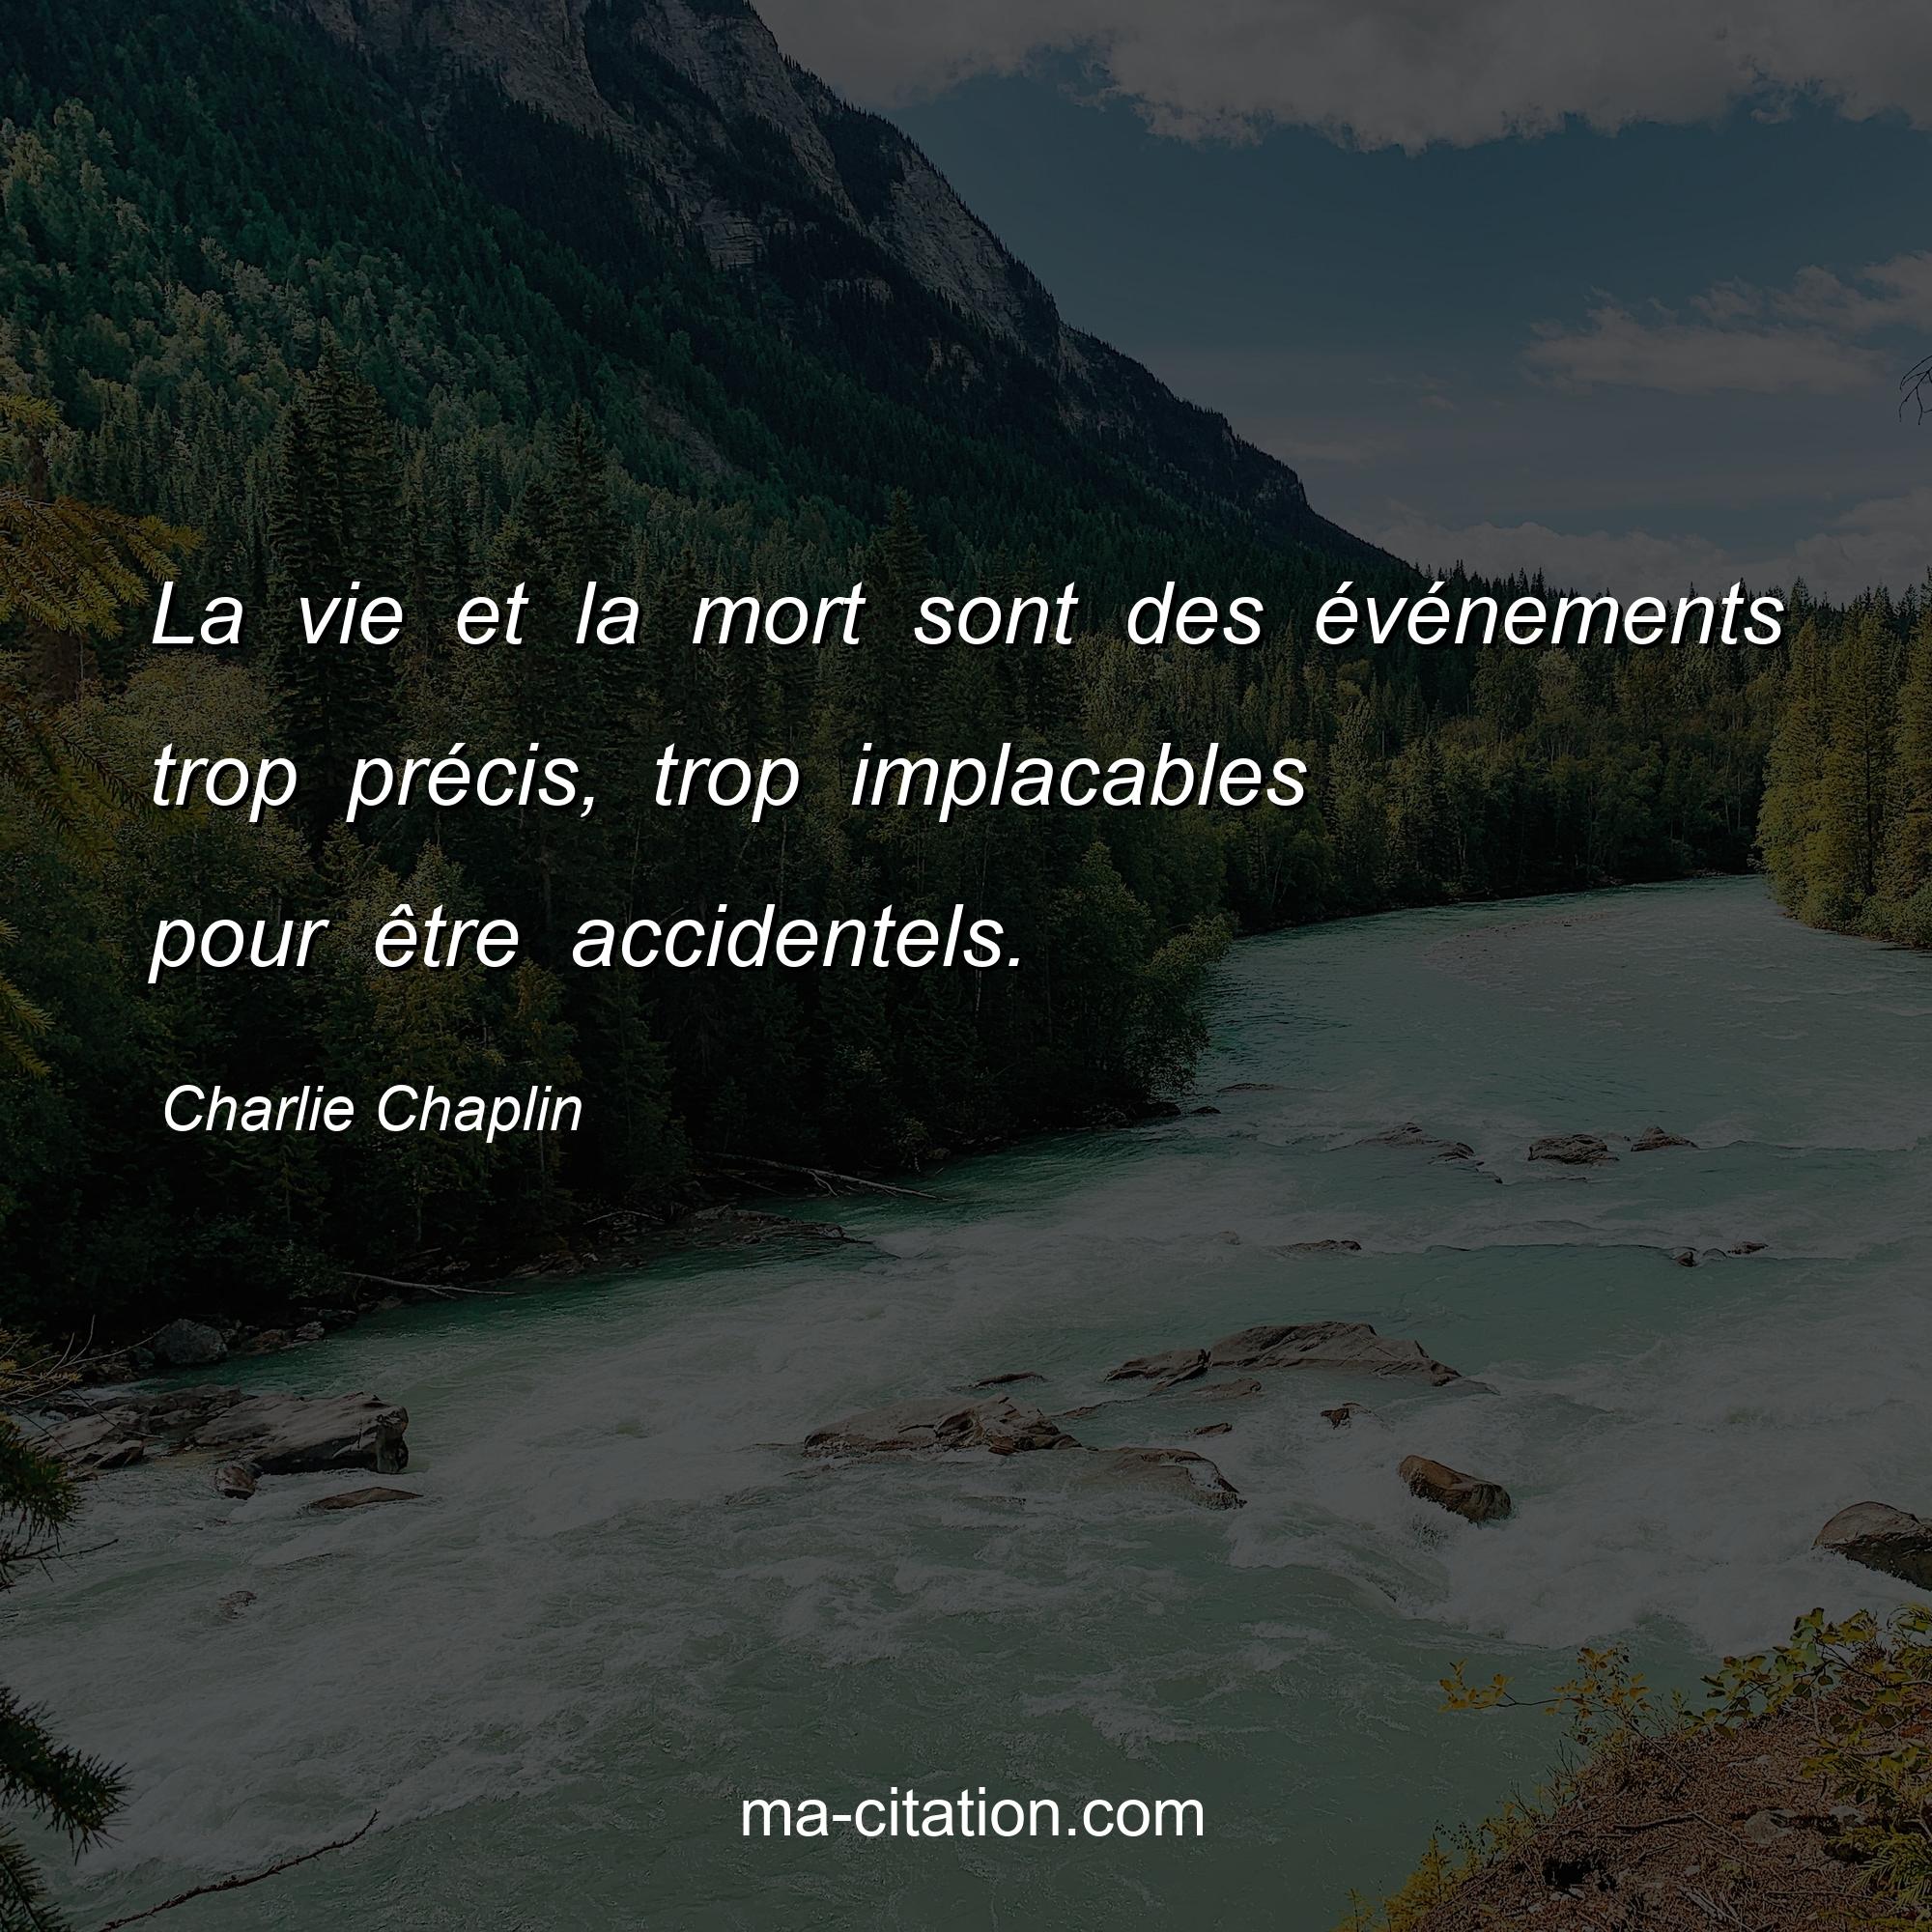 Charlie Chaplin : La vie et la mort sont des événements trop précis, trop implacables pour être accidentels.